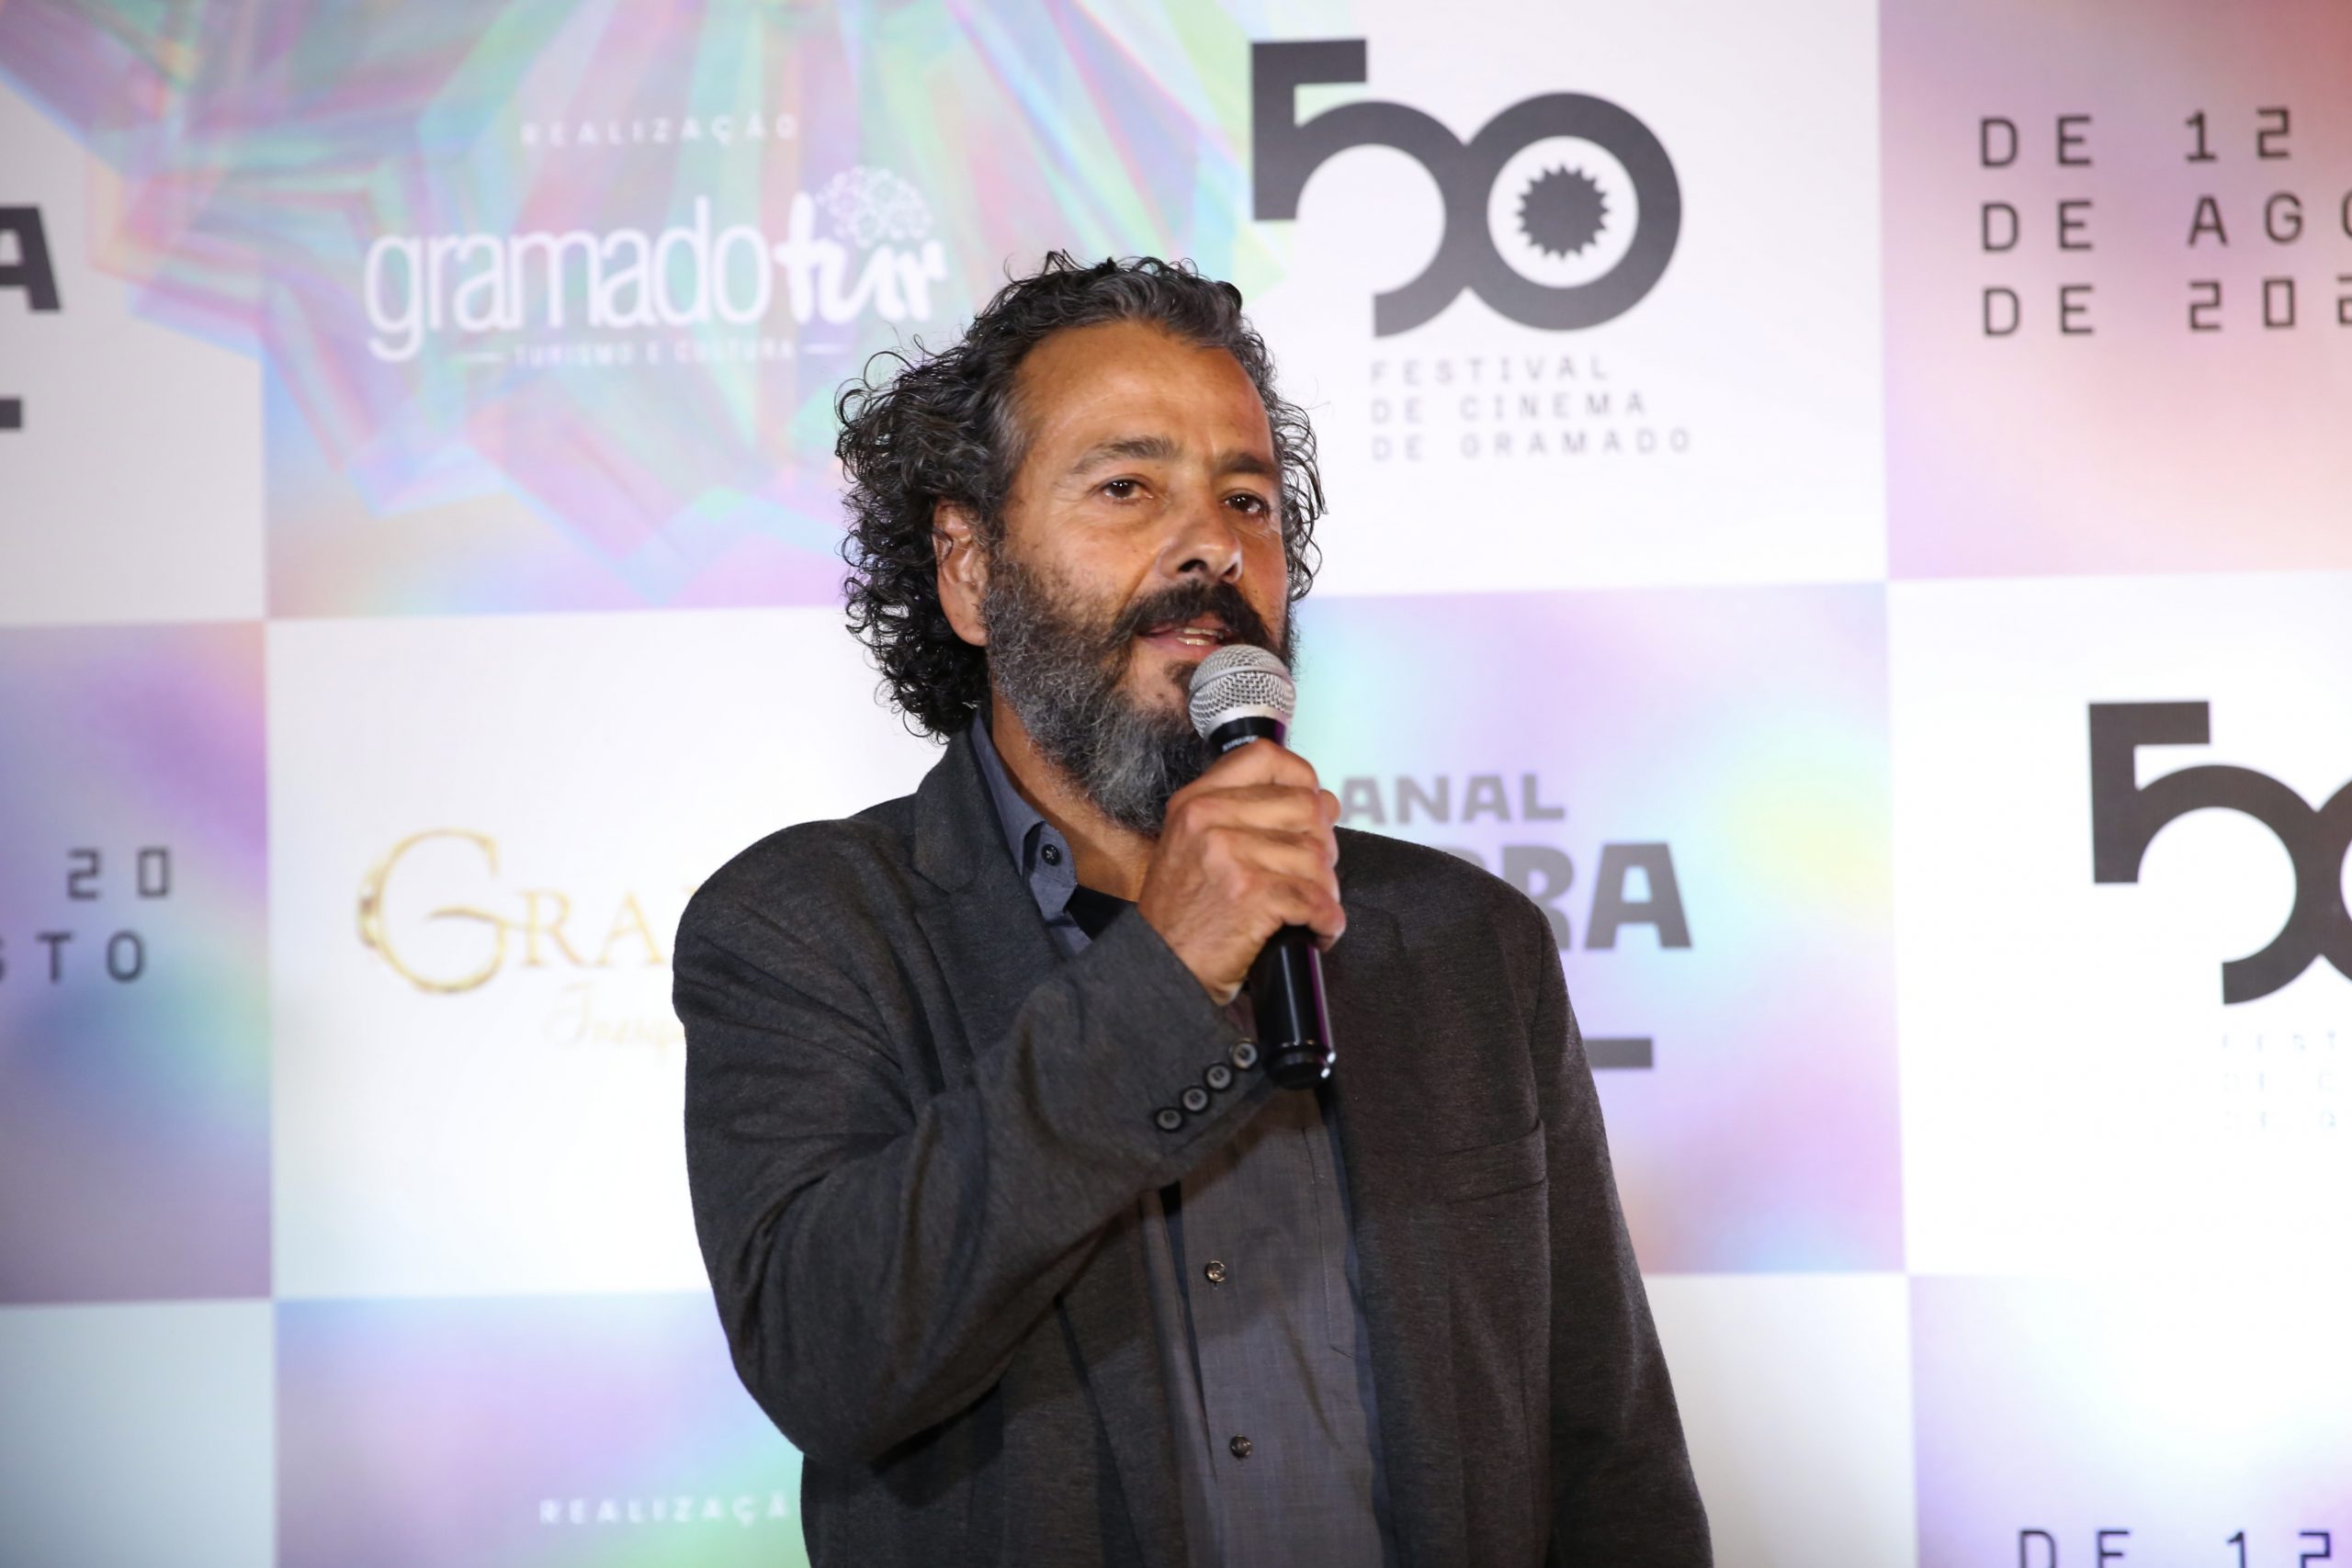 50° Festival de Cinema de Gramado homenageia Marcos Palmeira com Troféu Oscarito